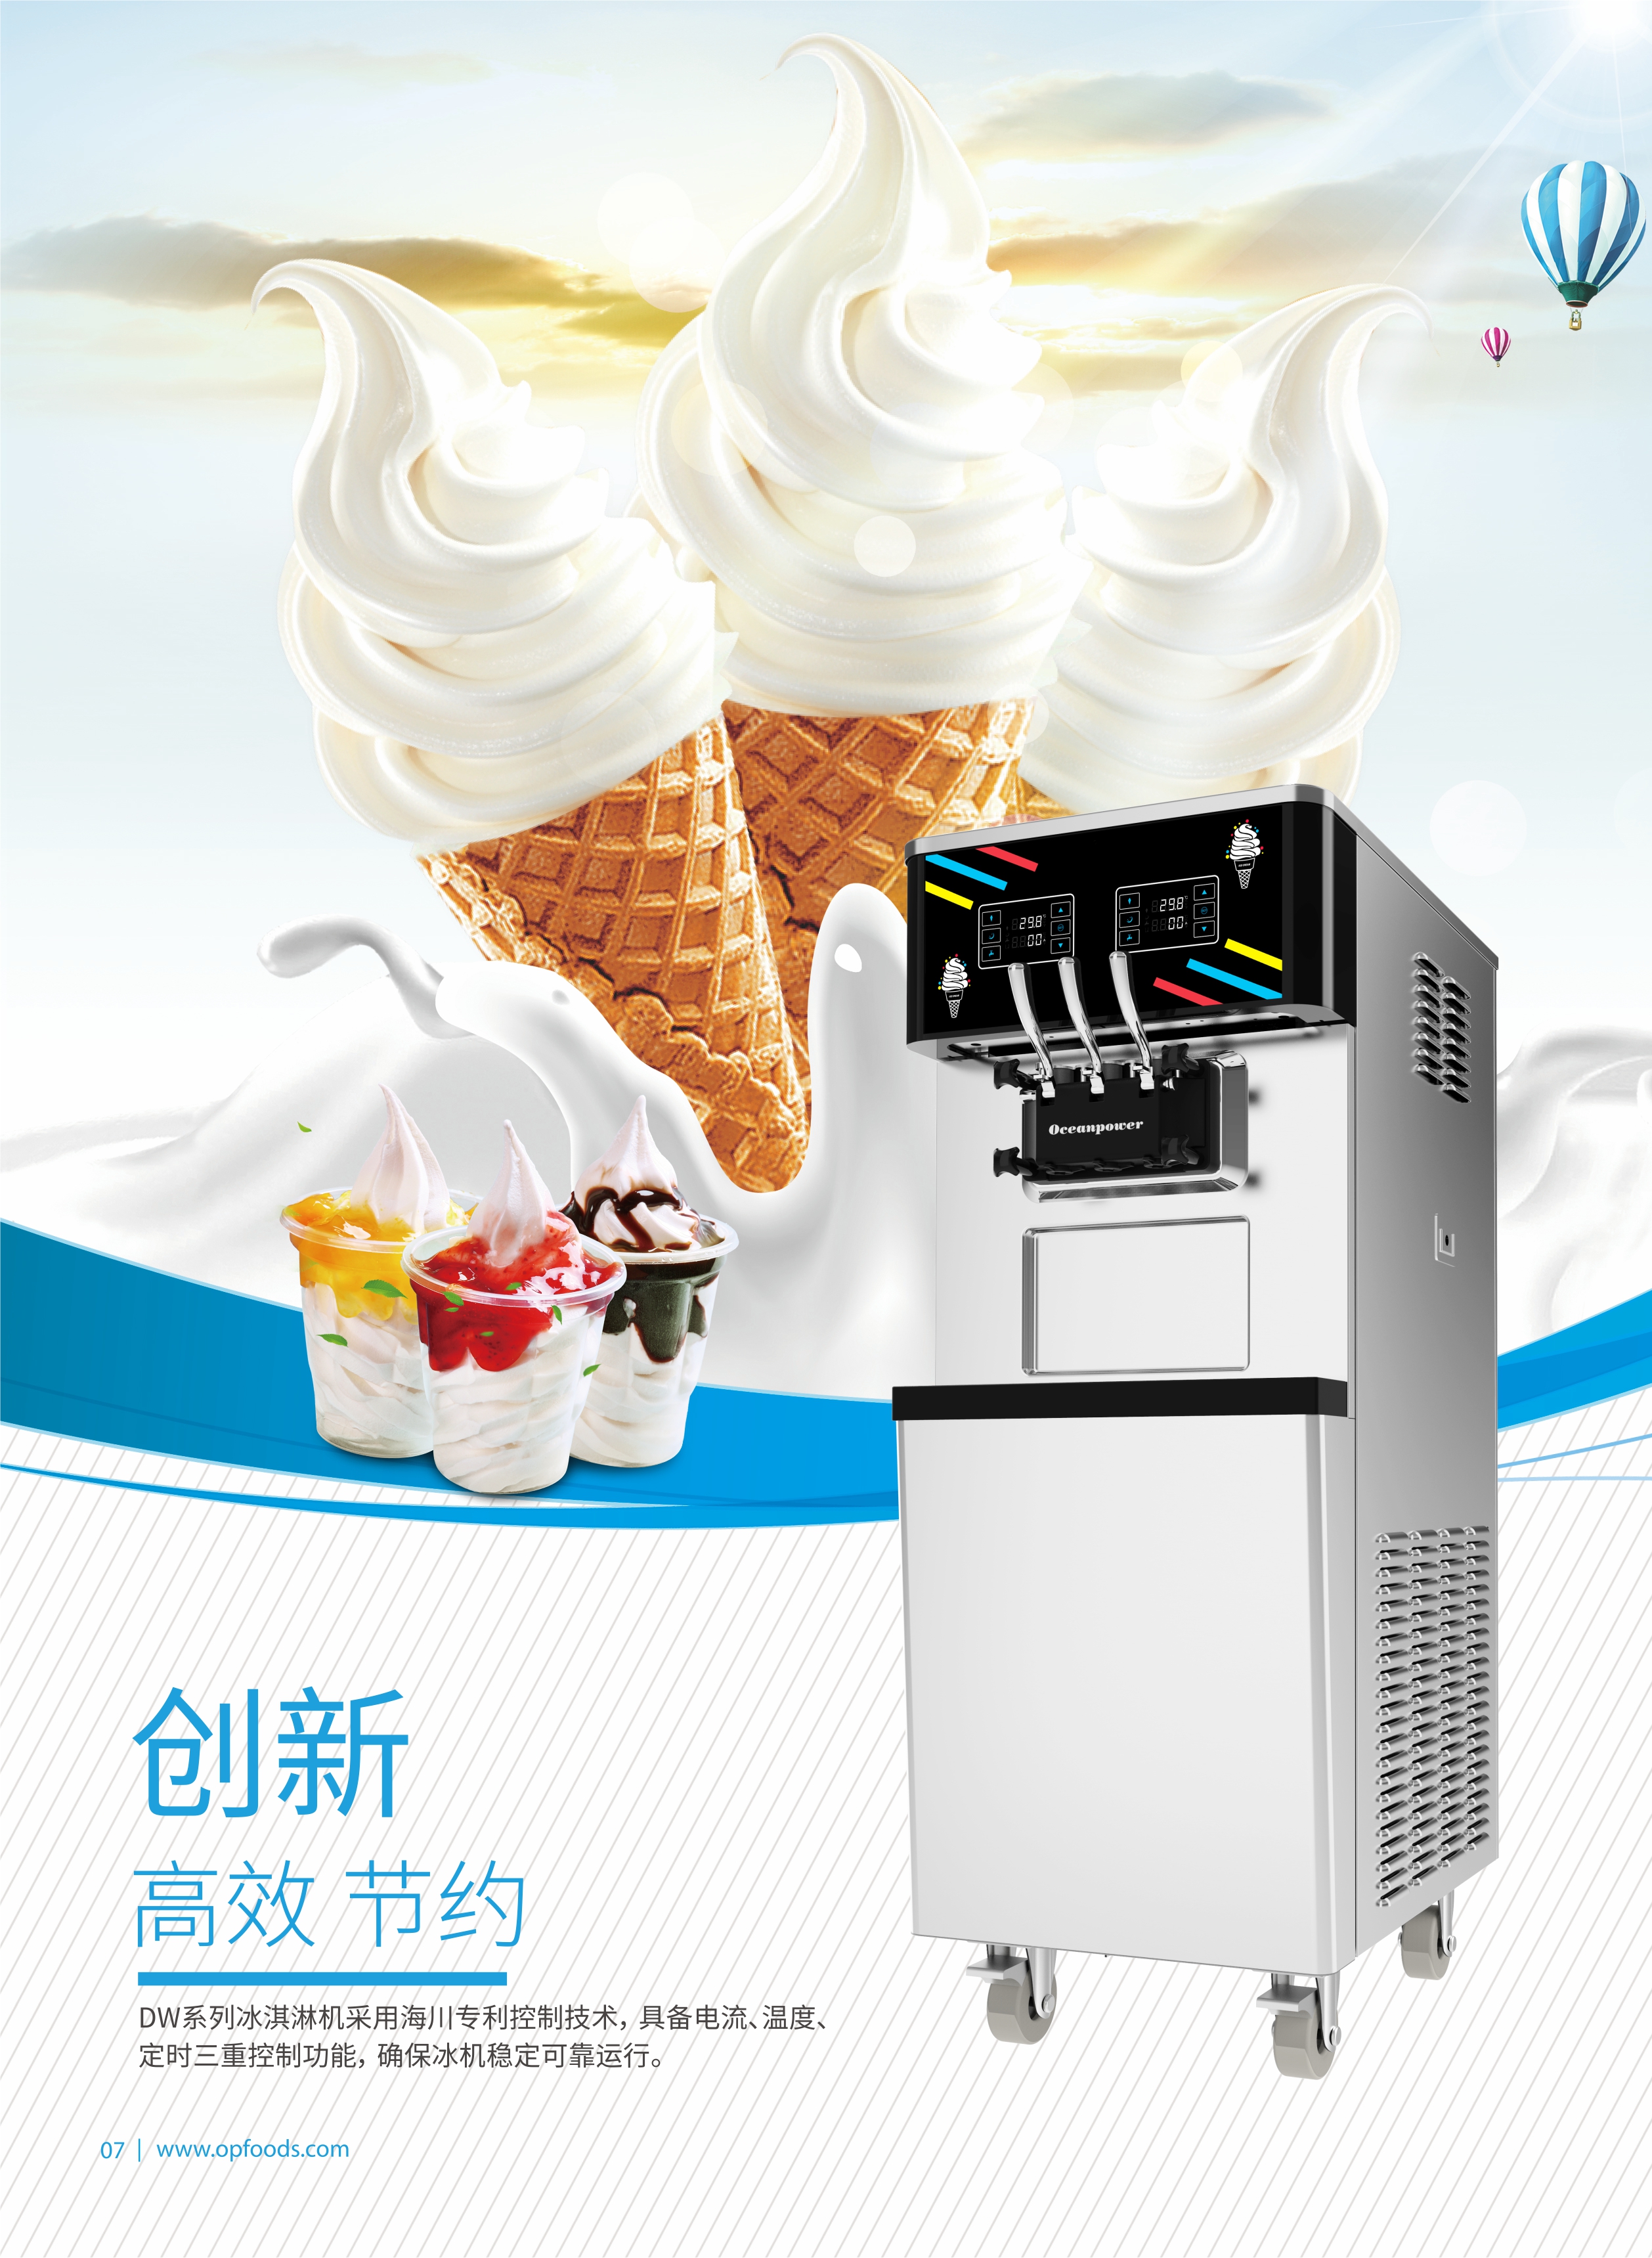 立式双控软冰淇淋机DW138ETC